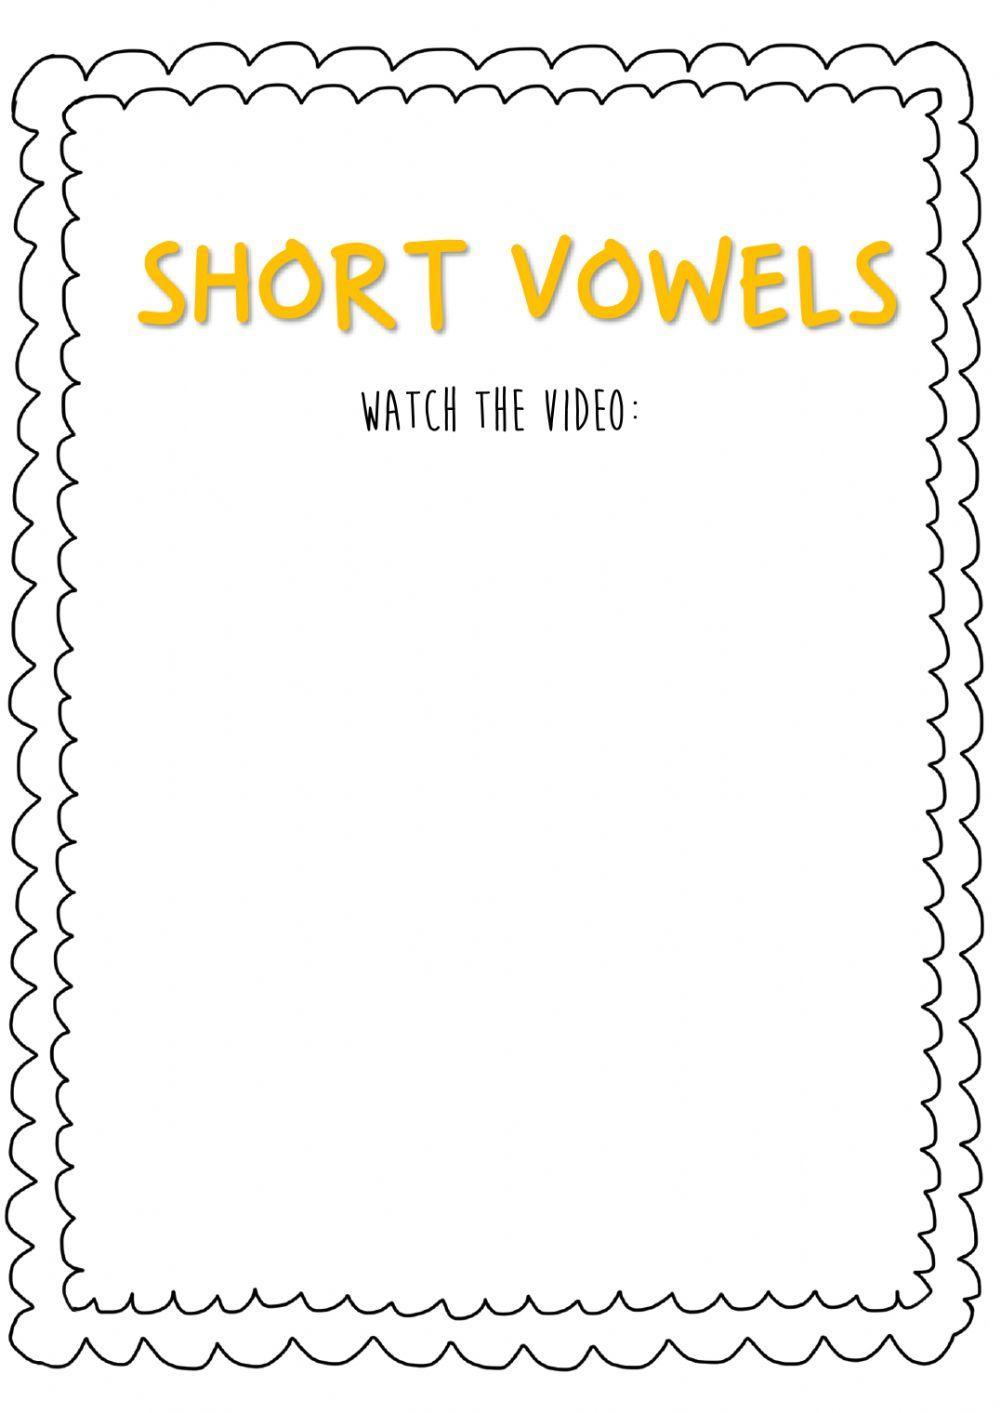 Short vowels!